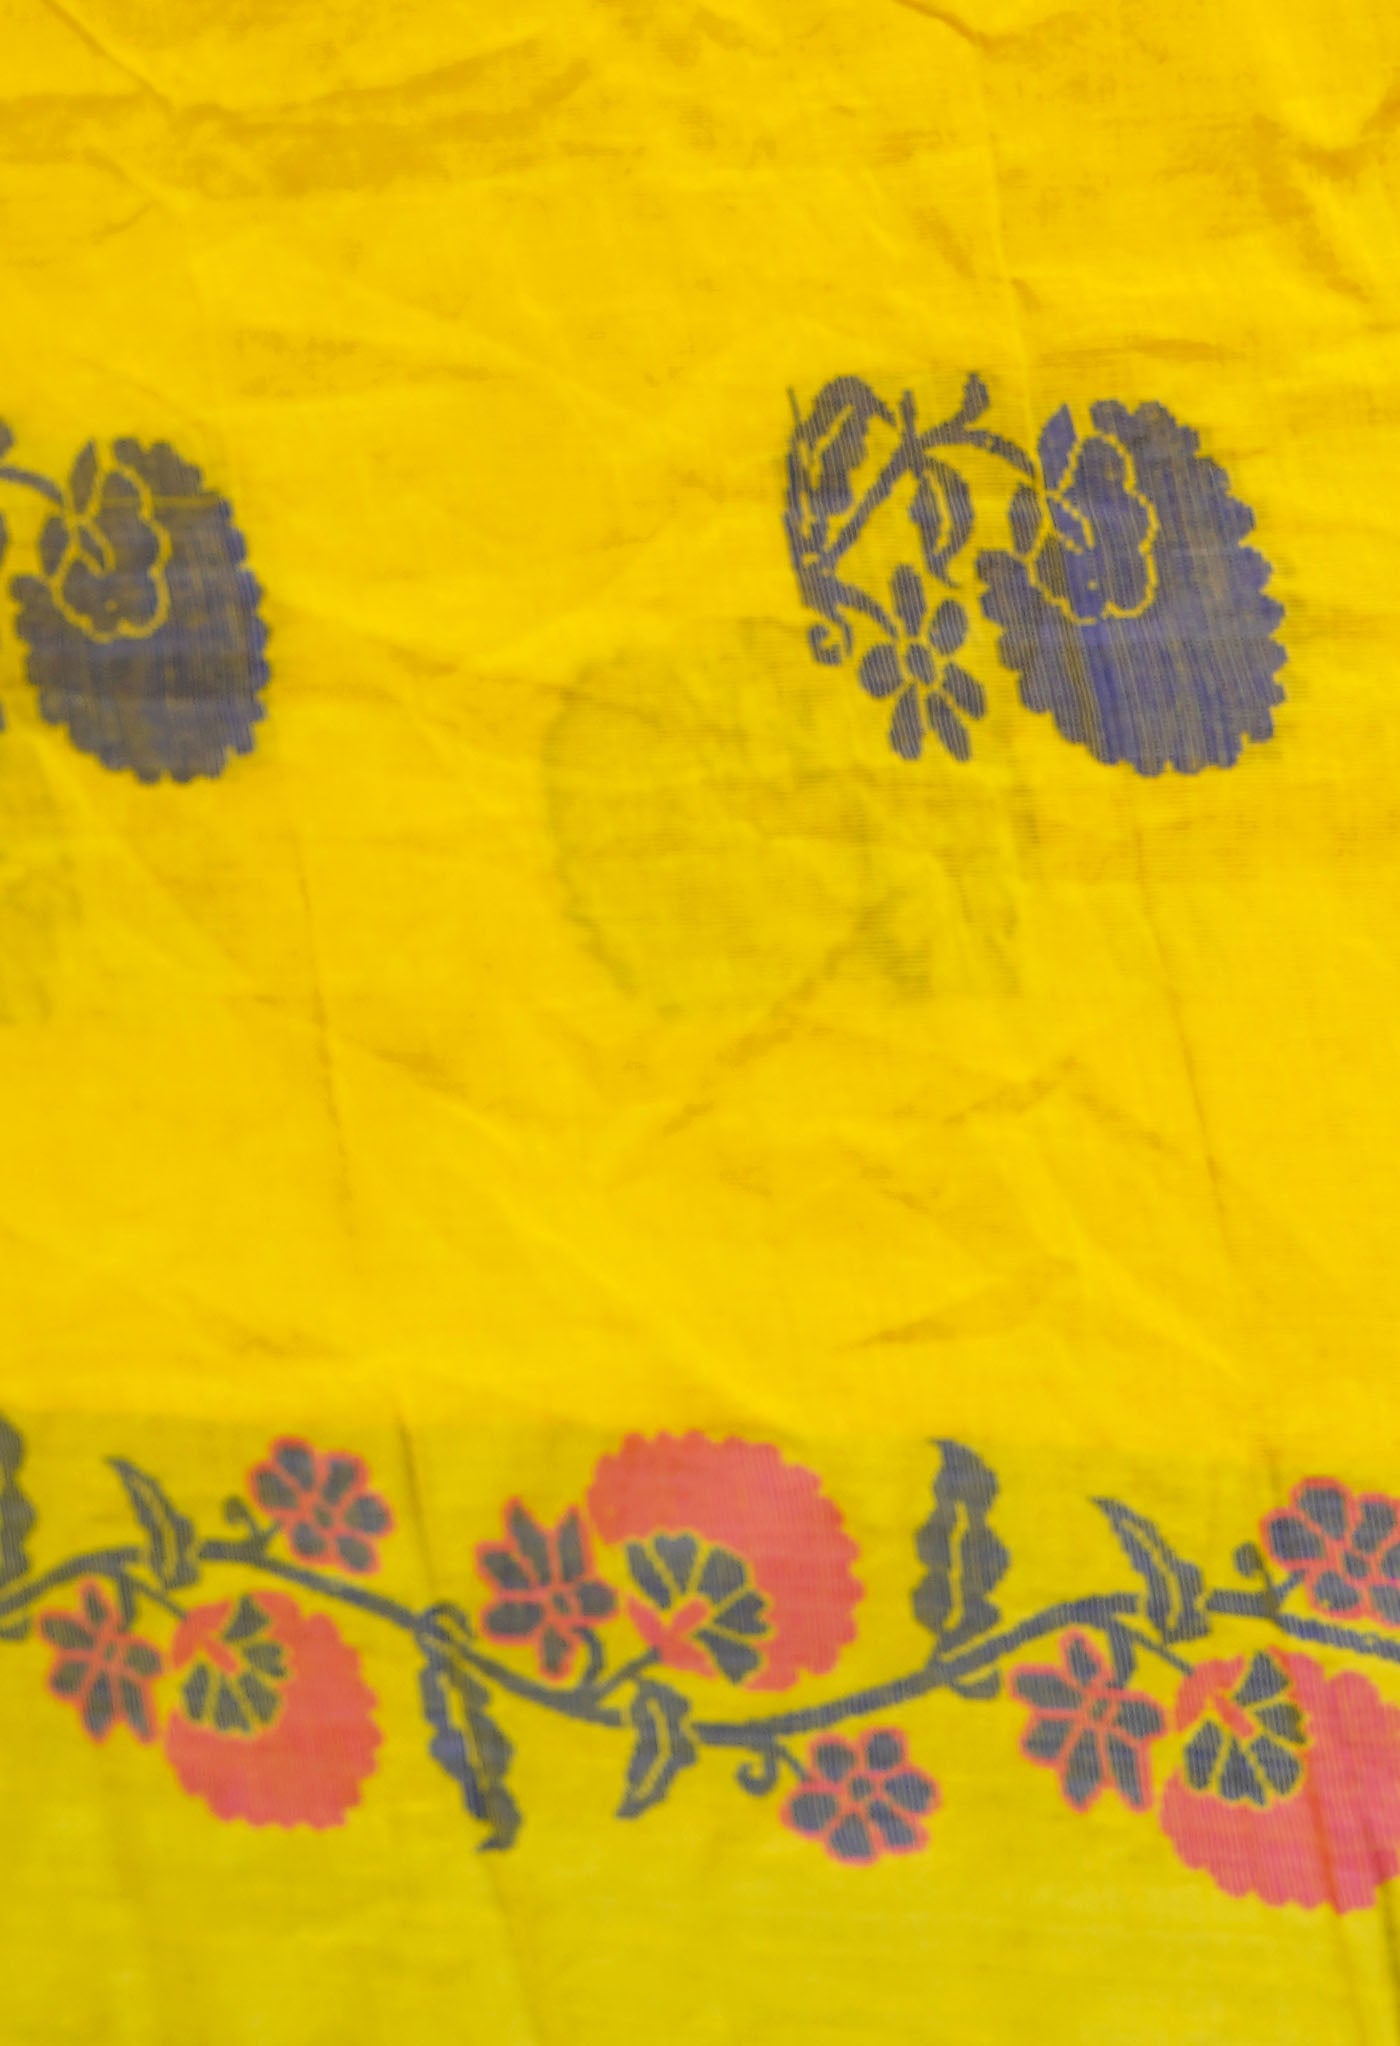 Yellow Pure Handloom Dhaka Jamdhani Bengal Cotton Saree-UNM68750